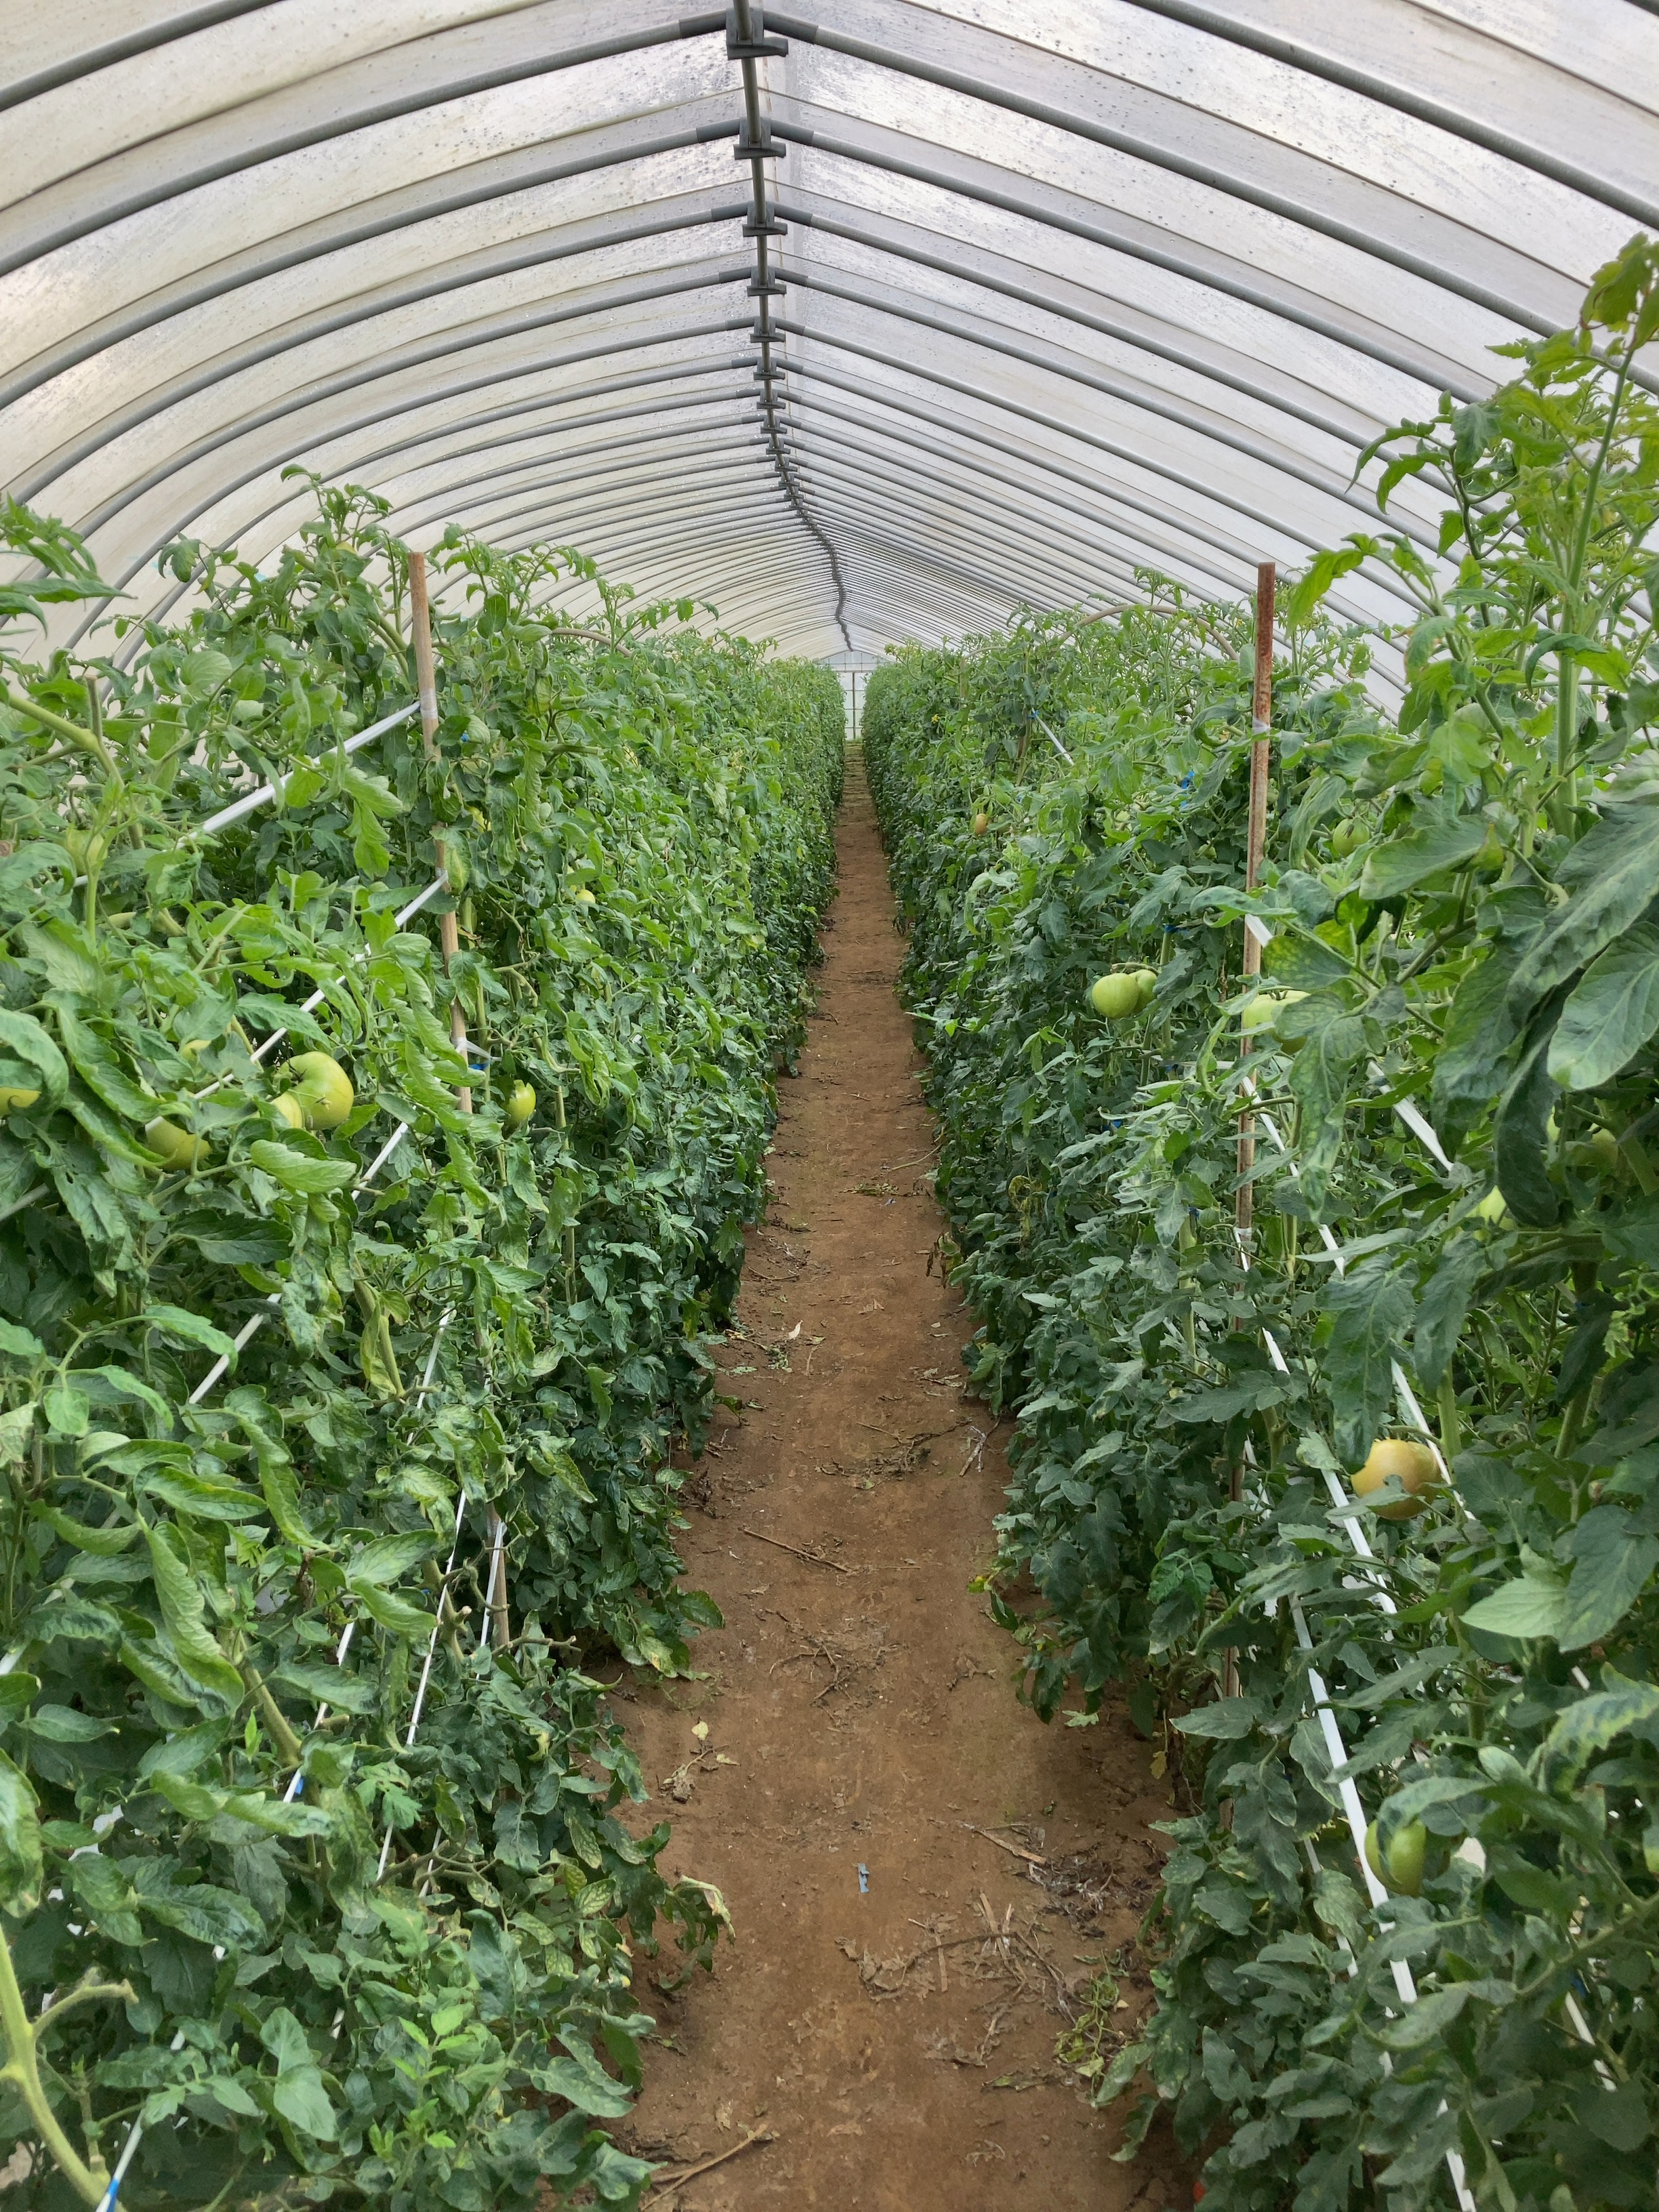 丸朝農協では、主力の夏秋トマト以外に、春トマトも栽培